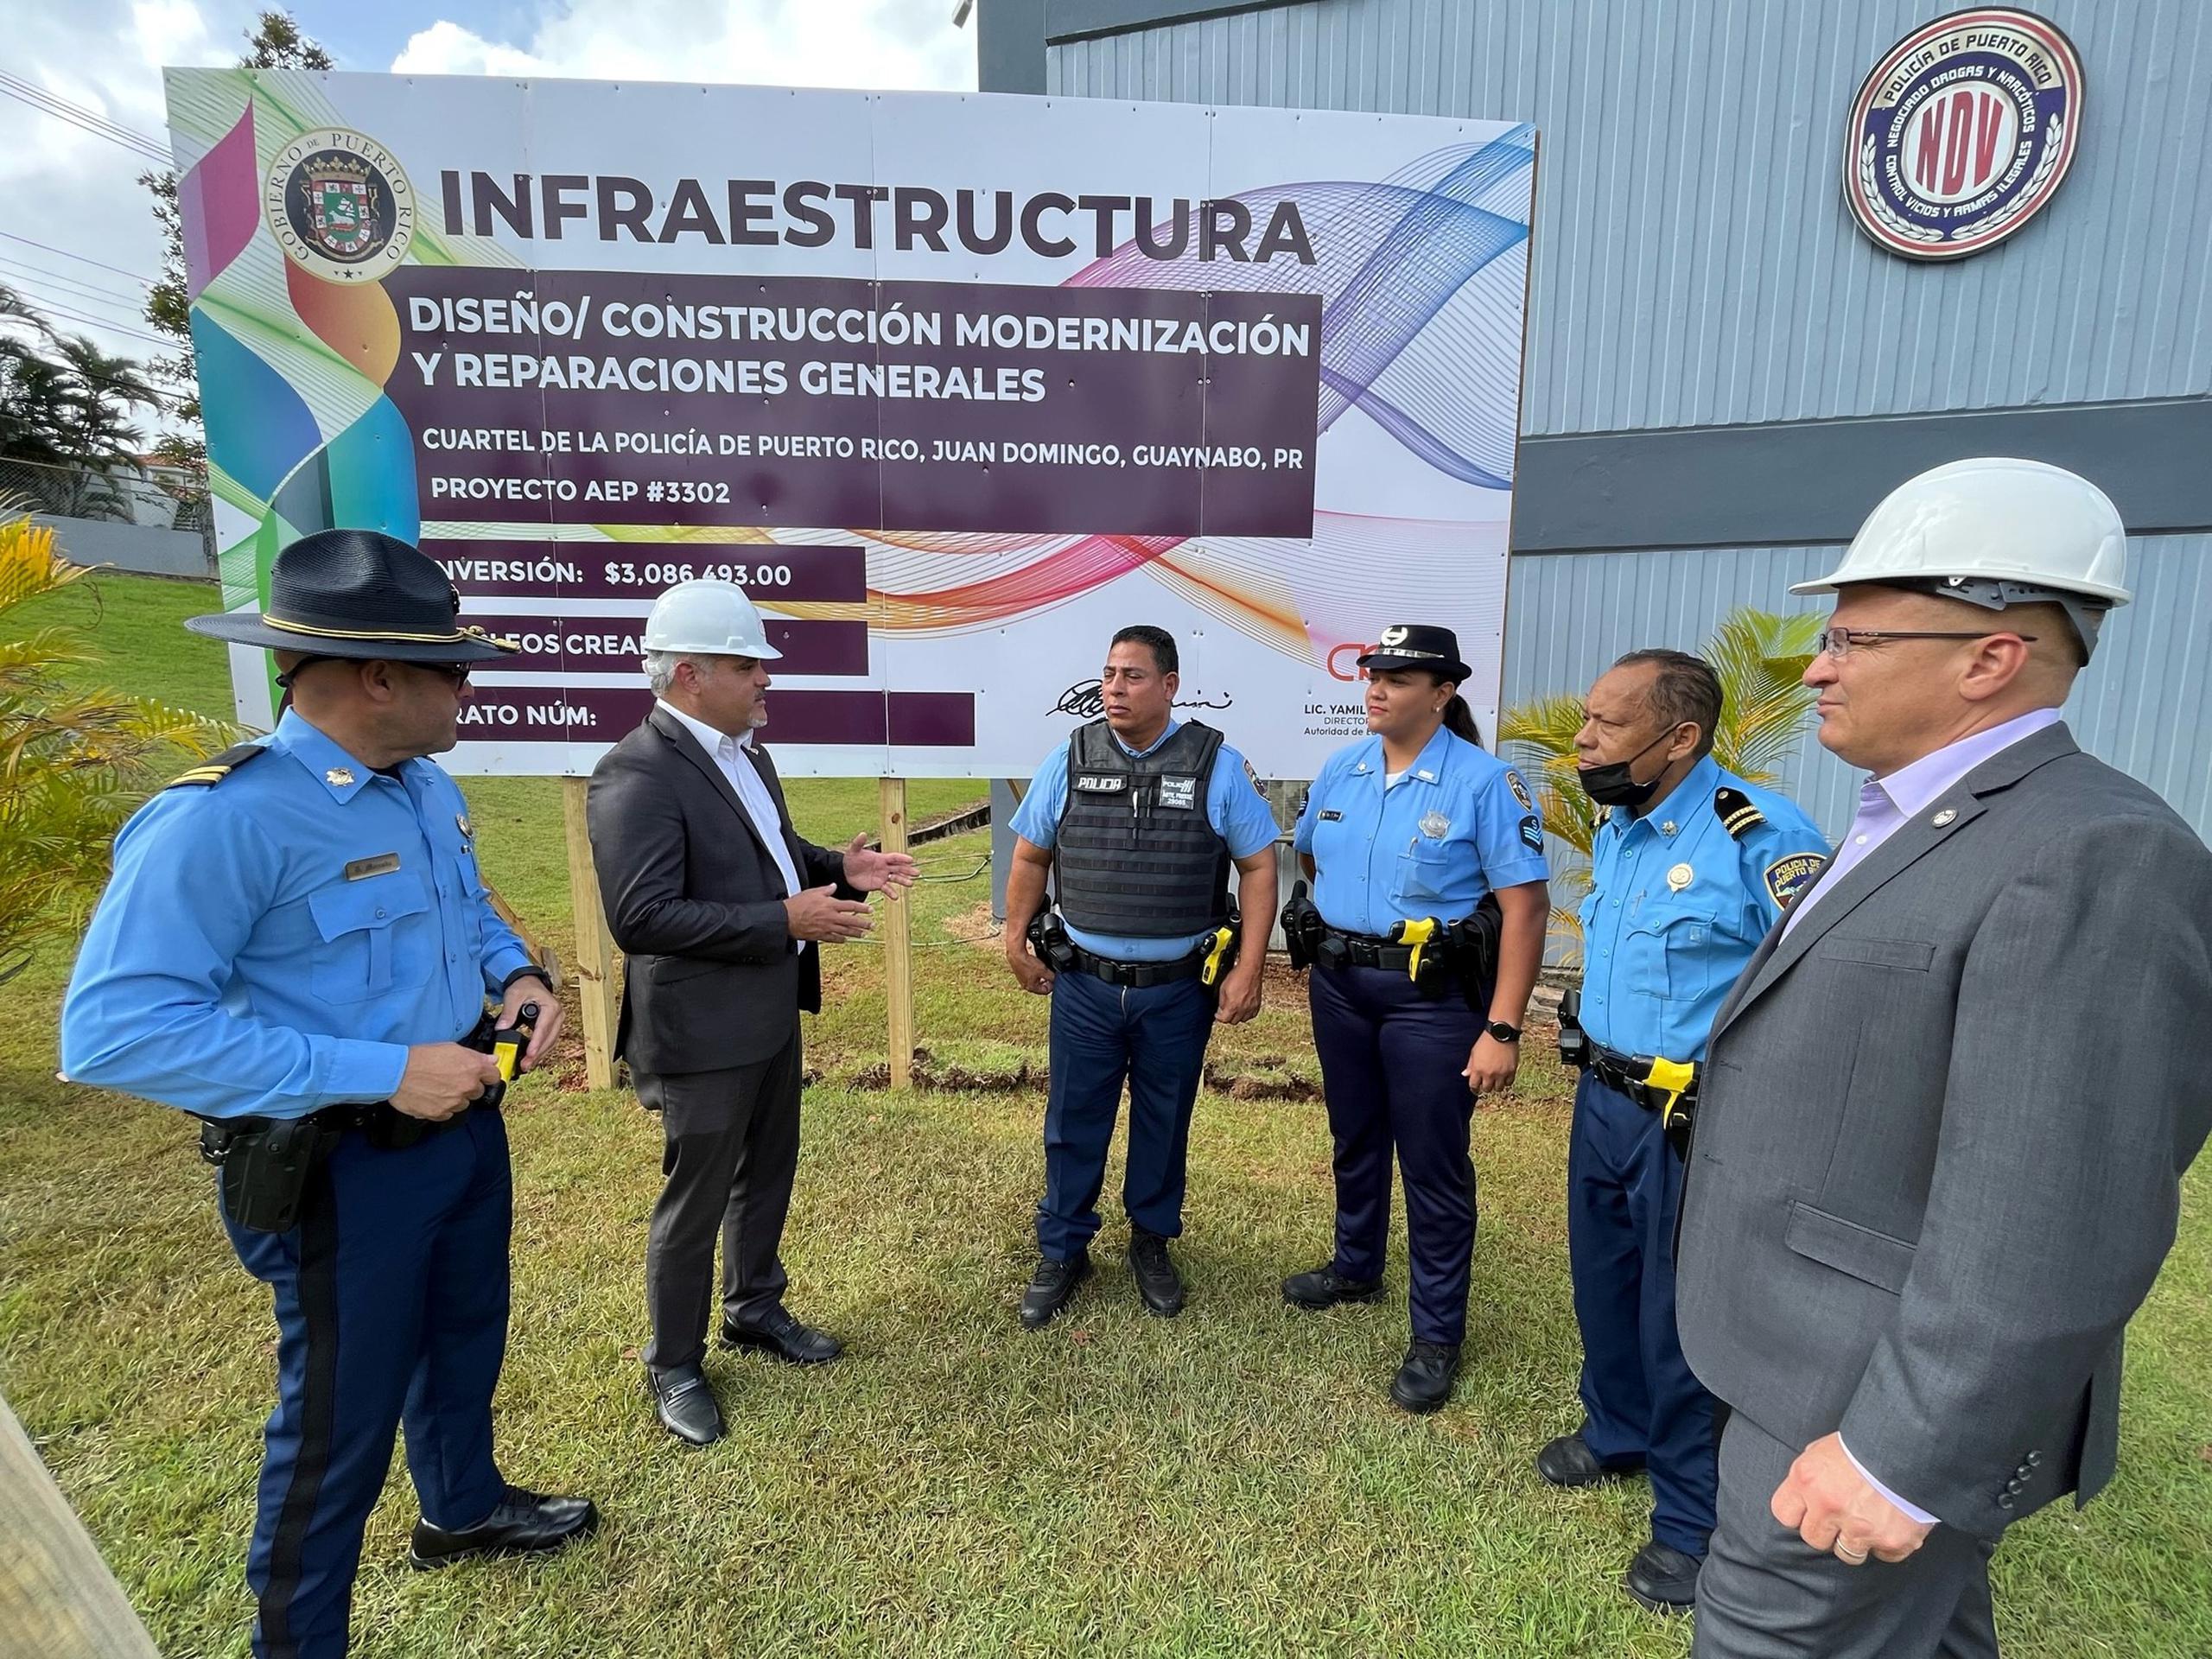 El secretario del Departamento de Seguridad Pública, Alexis Torres, y el director ejecutivo de la Autoridad de Edificios Públicos, Yamil Ayala Cruz, visitaron hoy el cuartel de Juan Domingo en Guaynabo.